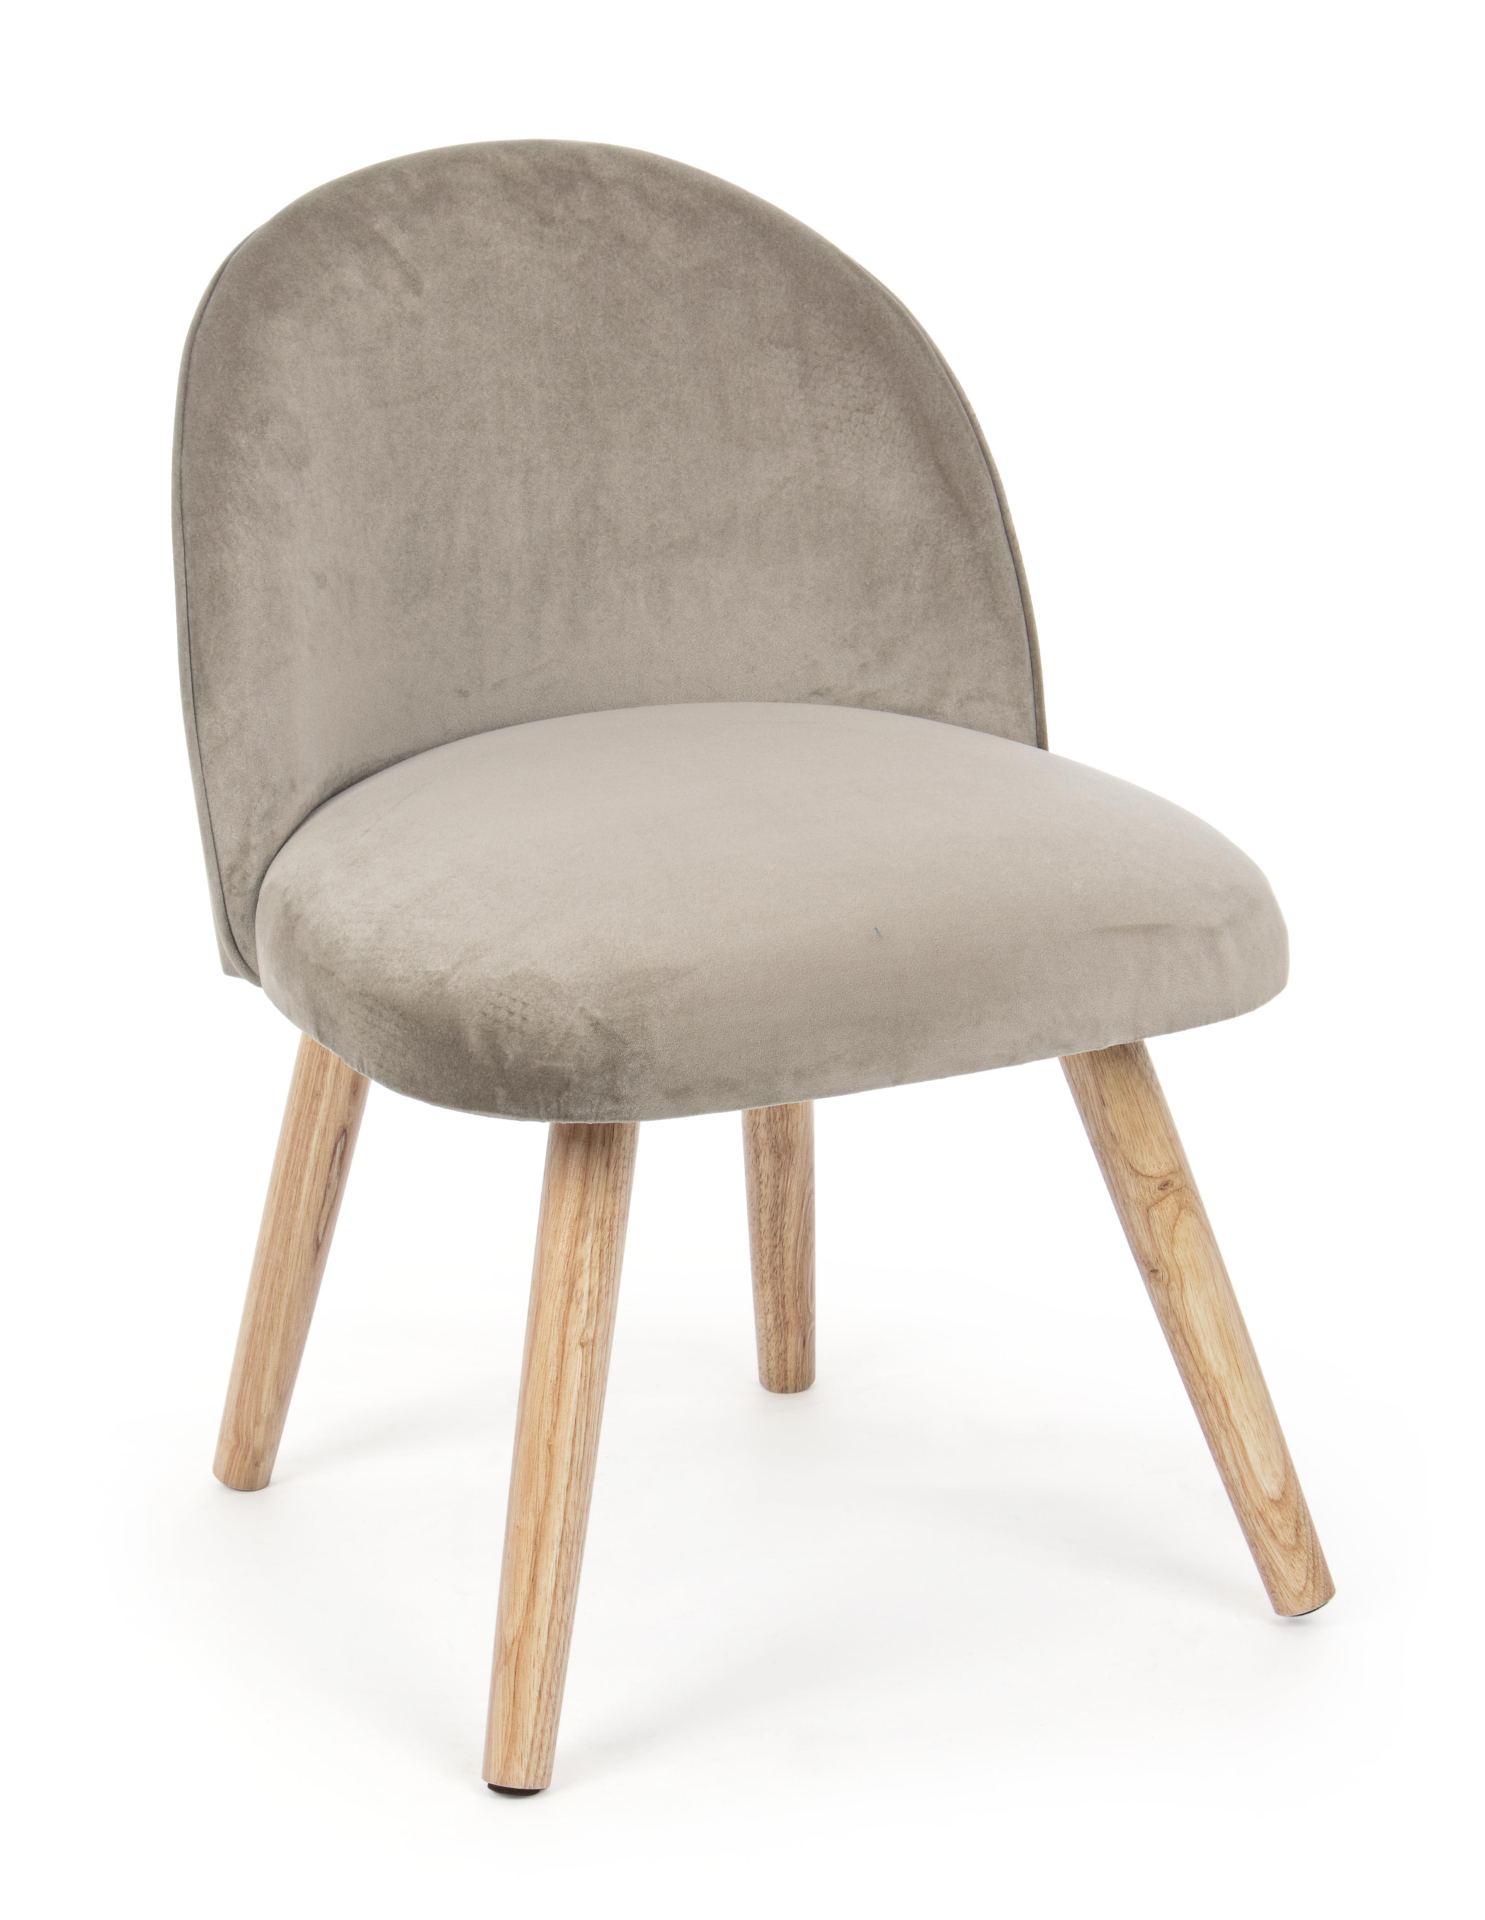 Der Stuhl Adeline überzeugt mit seinem klassischen Design. Gefertigt wurde er aus Stoff in Samt-Optik, welcher einen Taupe Farbton besitzt. Das Gestell ist aus Buchenholz und hat eine natürliche Farbe. Der Stuhl besitzt eine Sitzhöhe von 42 cm. Die Breite